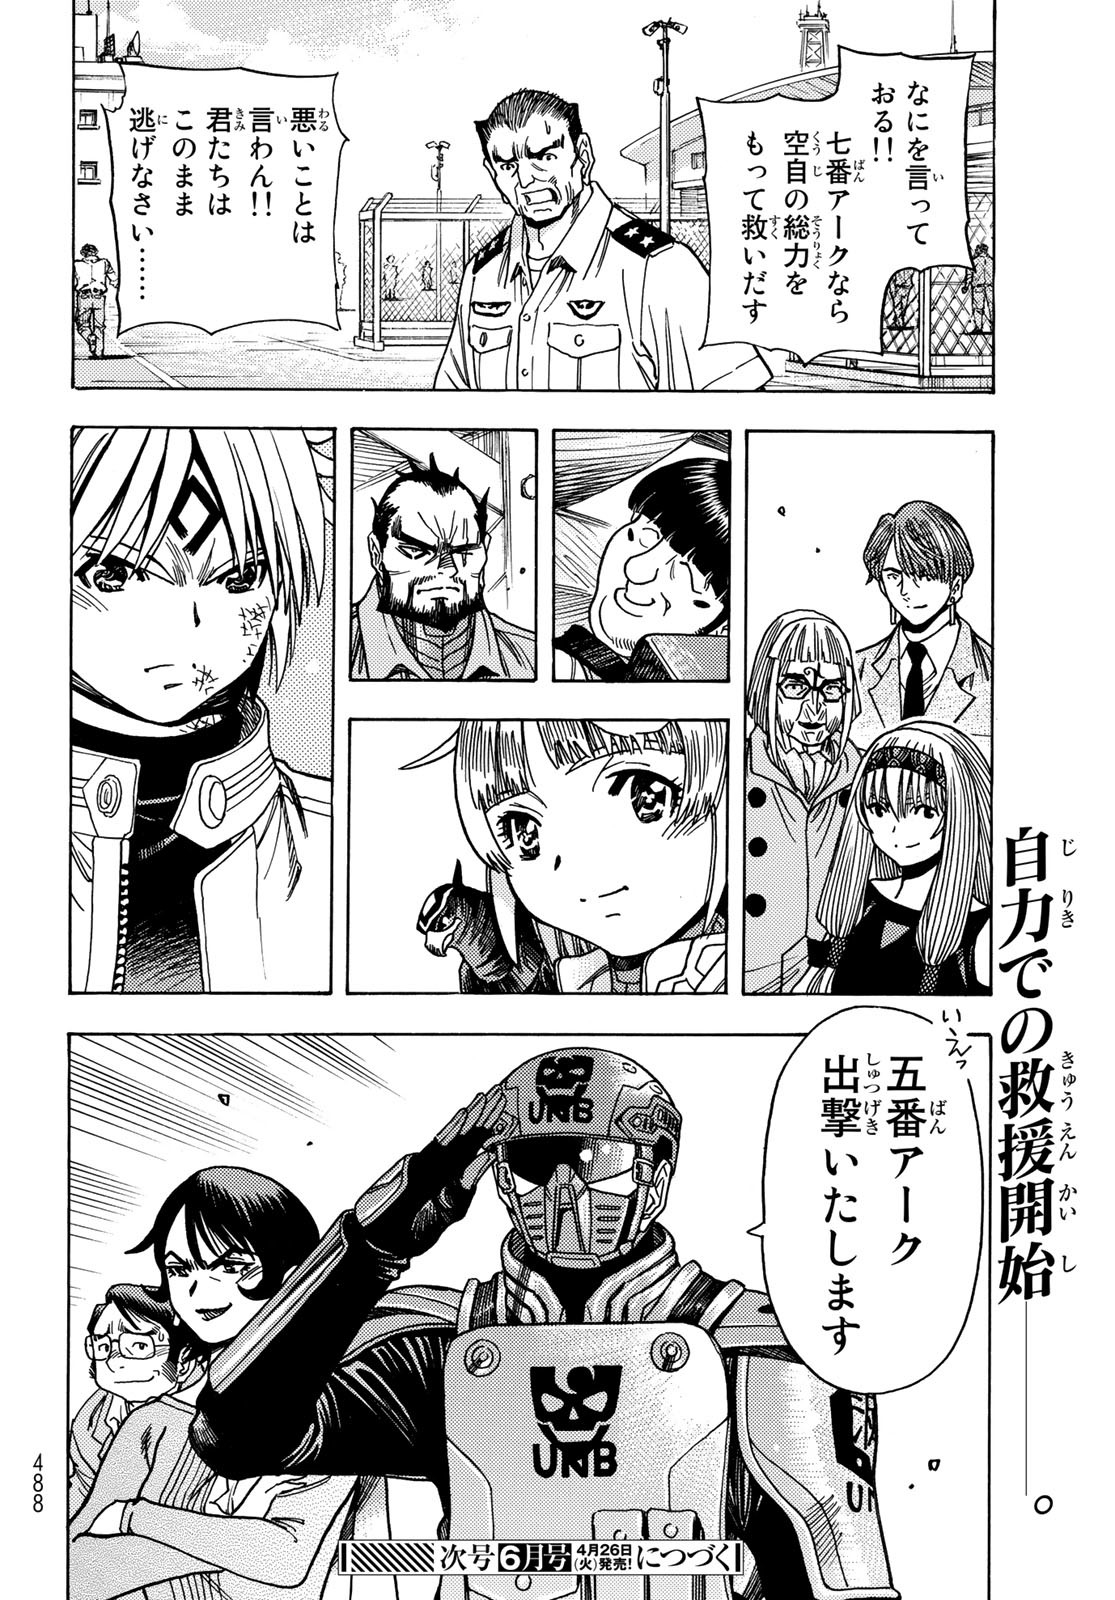 Mugou no Schnell Gear: Chikyuugai Kisouka AI - Chapter 35 - Page 20